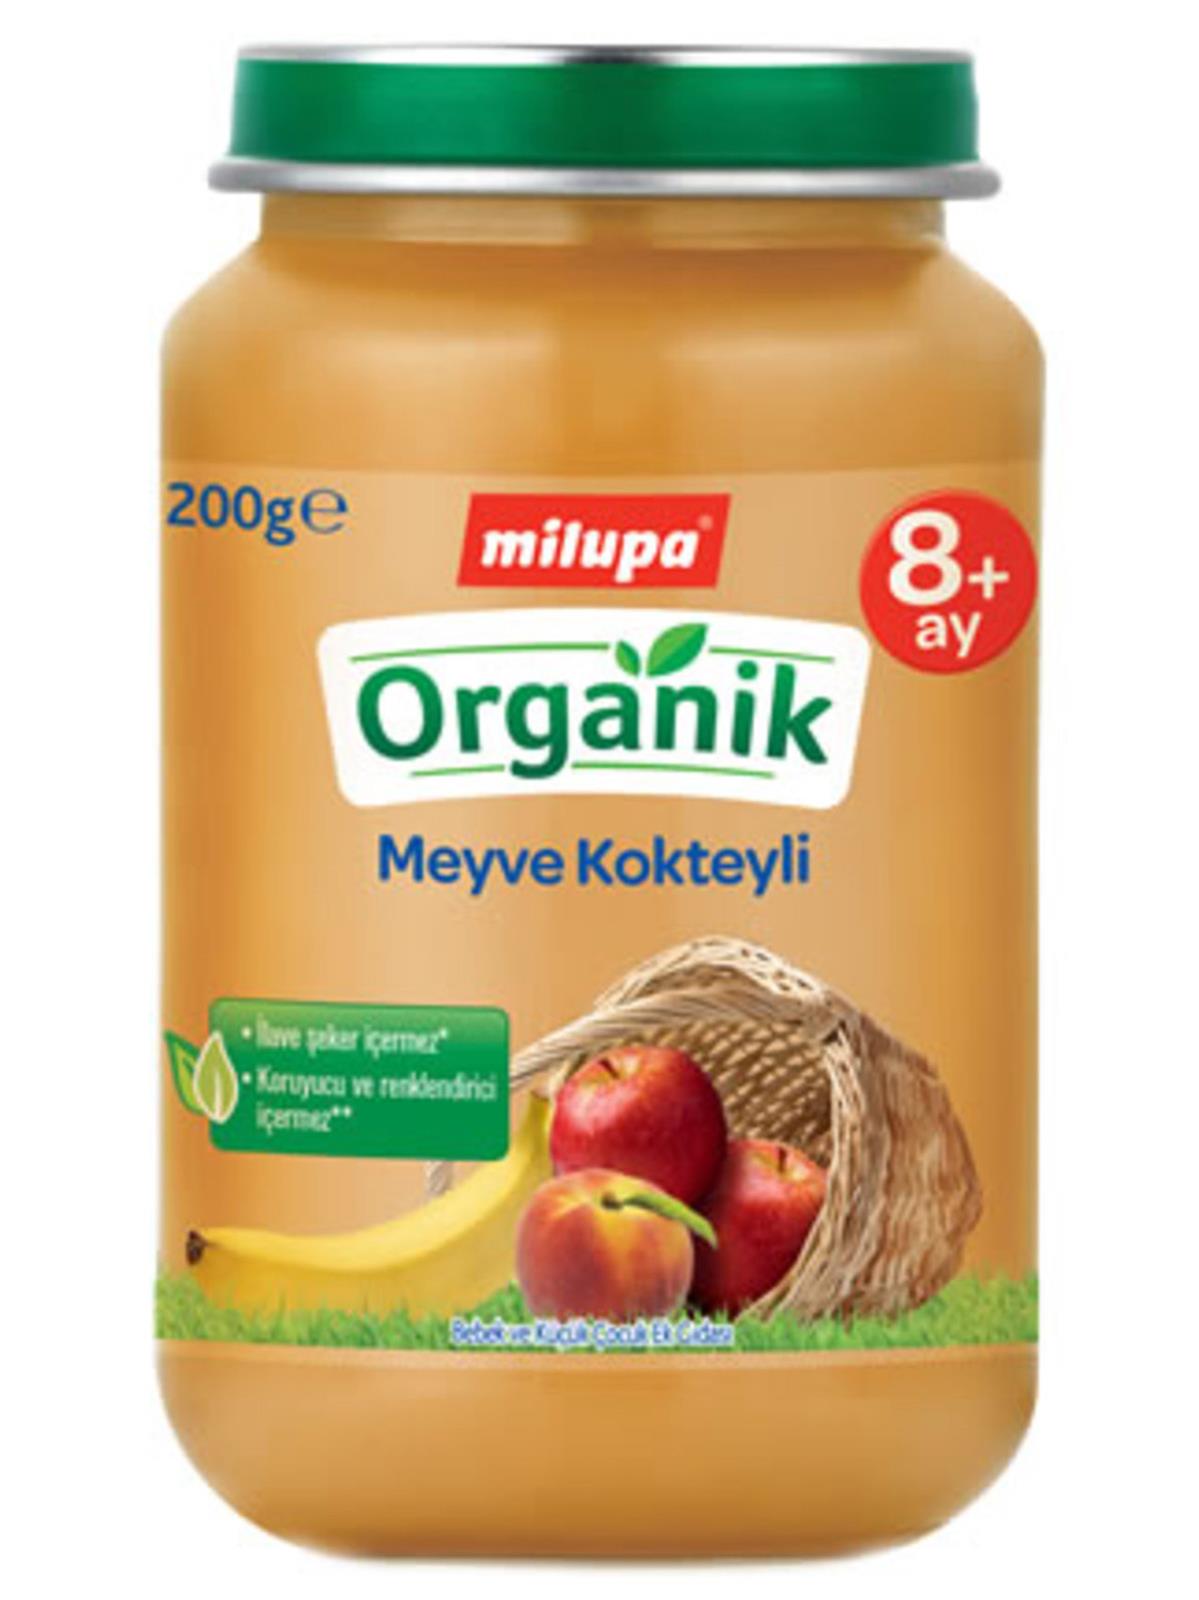 Milupa Organik Meyve Kokteyli Kavanoz 200 g 8+ Ay